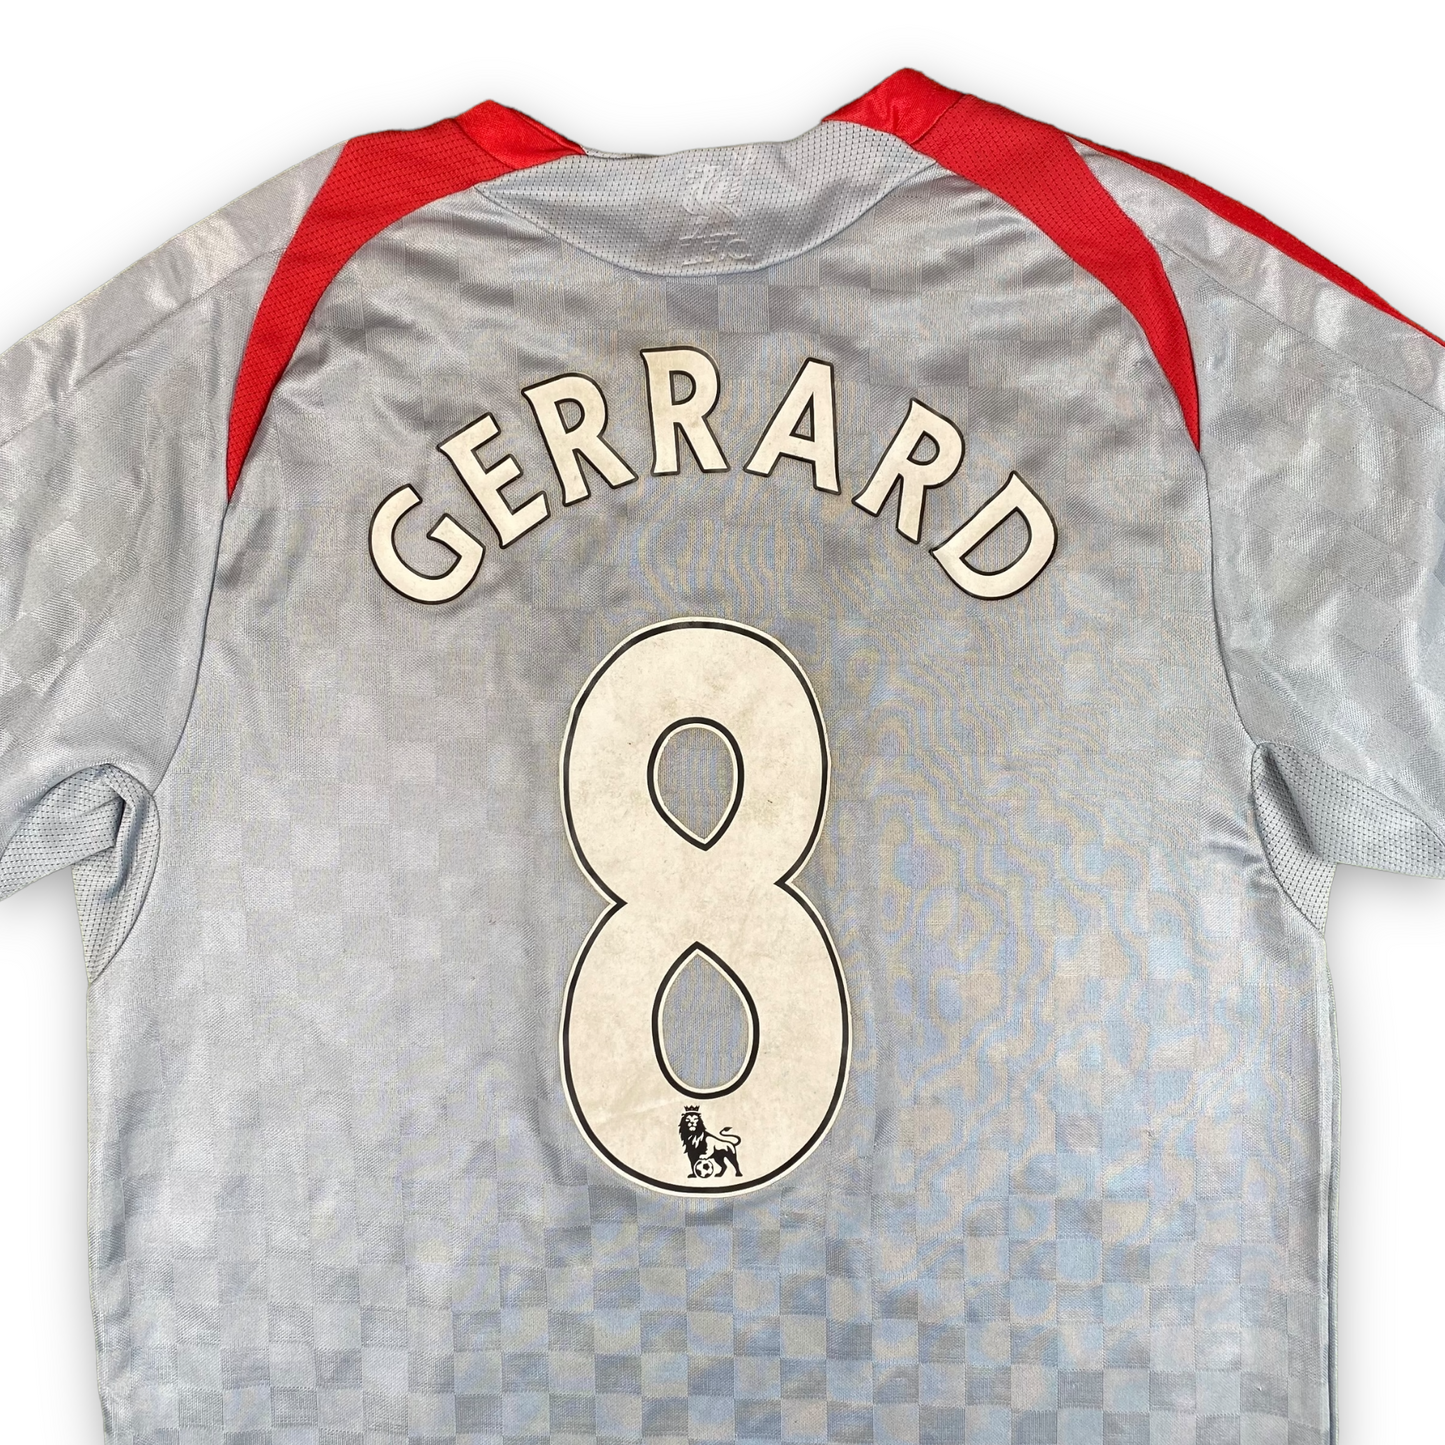 Liverpool 2008-09 Away Shirt (XL) Gerrard #8